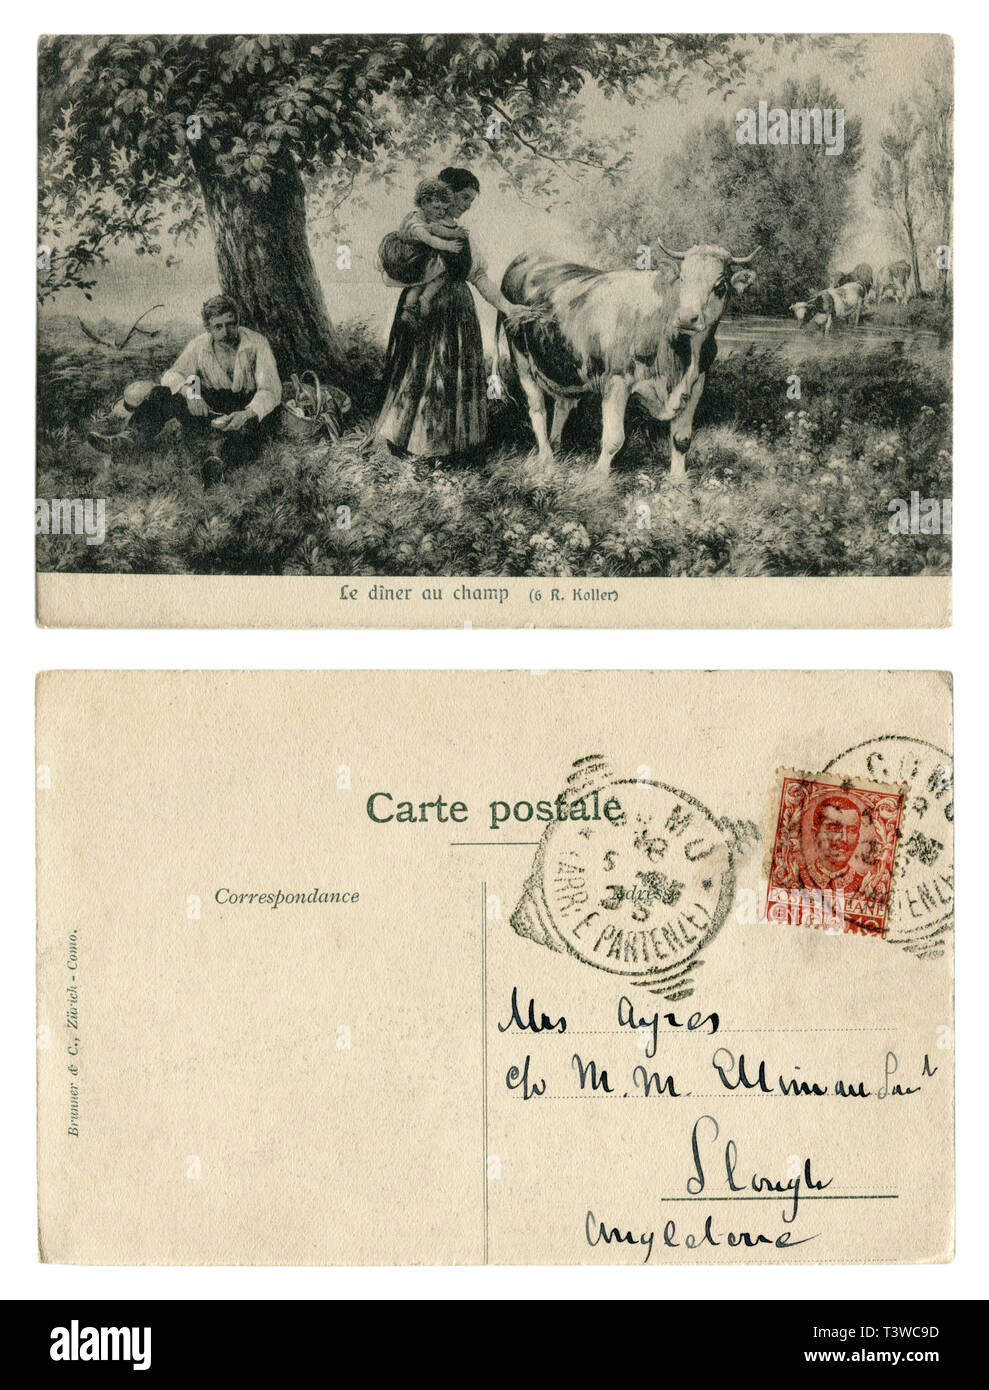 Französisch Historische Postkarte: Abendessen in einem Feld unter einem Baum durch den Teich. Idyllisches Bild. Eine Frau mit einem Kind brachte einen Korb mit Essen zu ihrem Mann Stockfoto